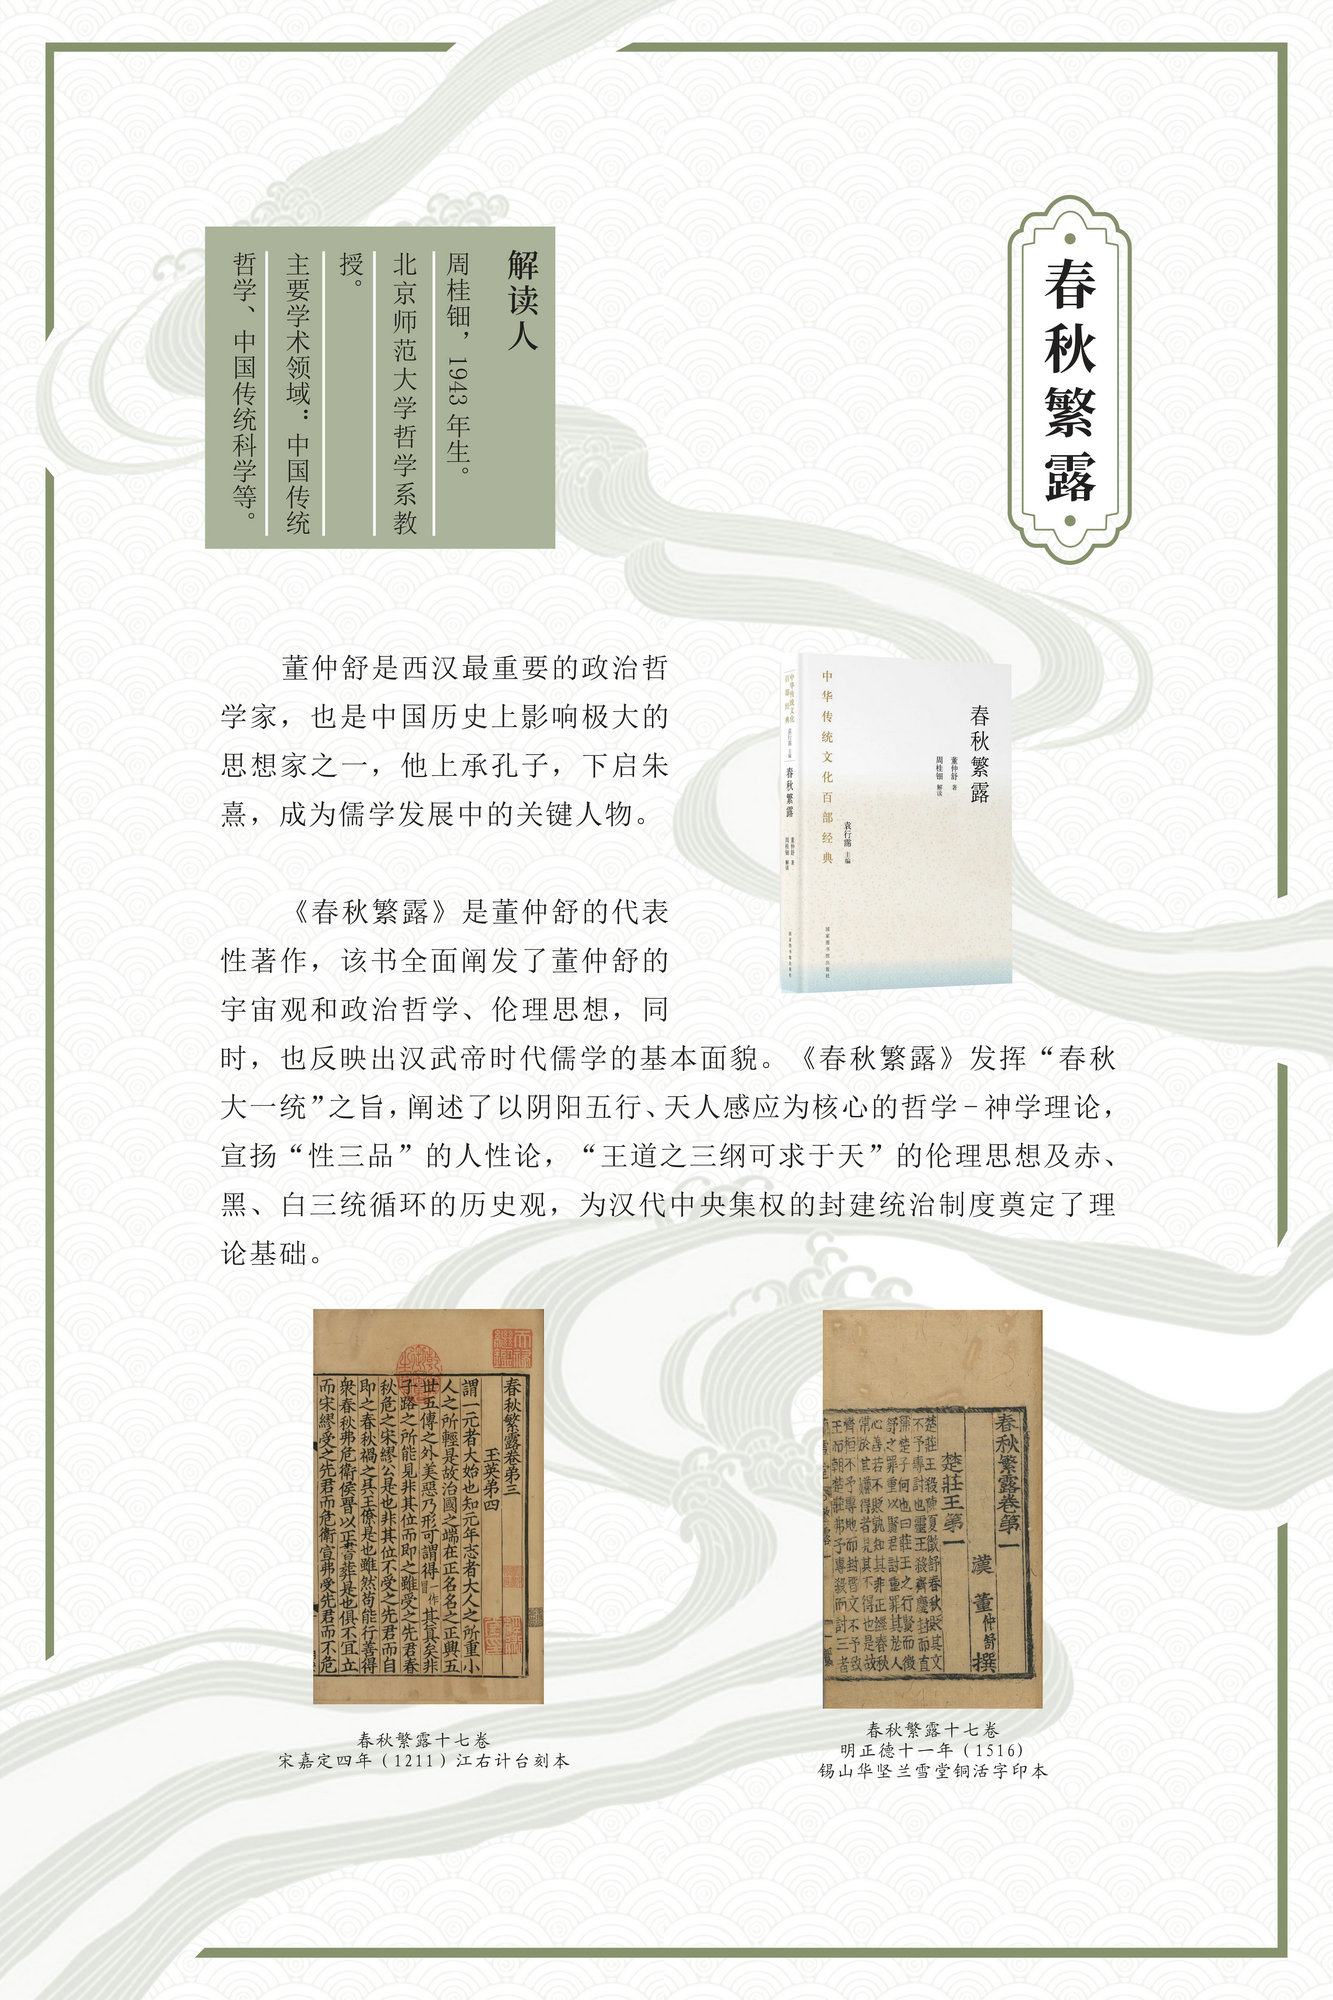 “激活经典 熔古铸今”——《中华传统文化百部经典》出版成果展_图9